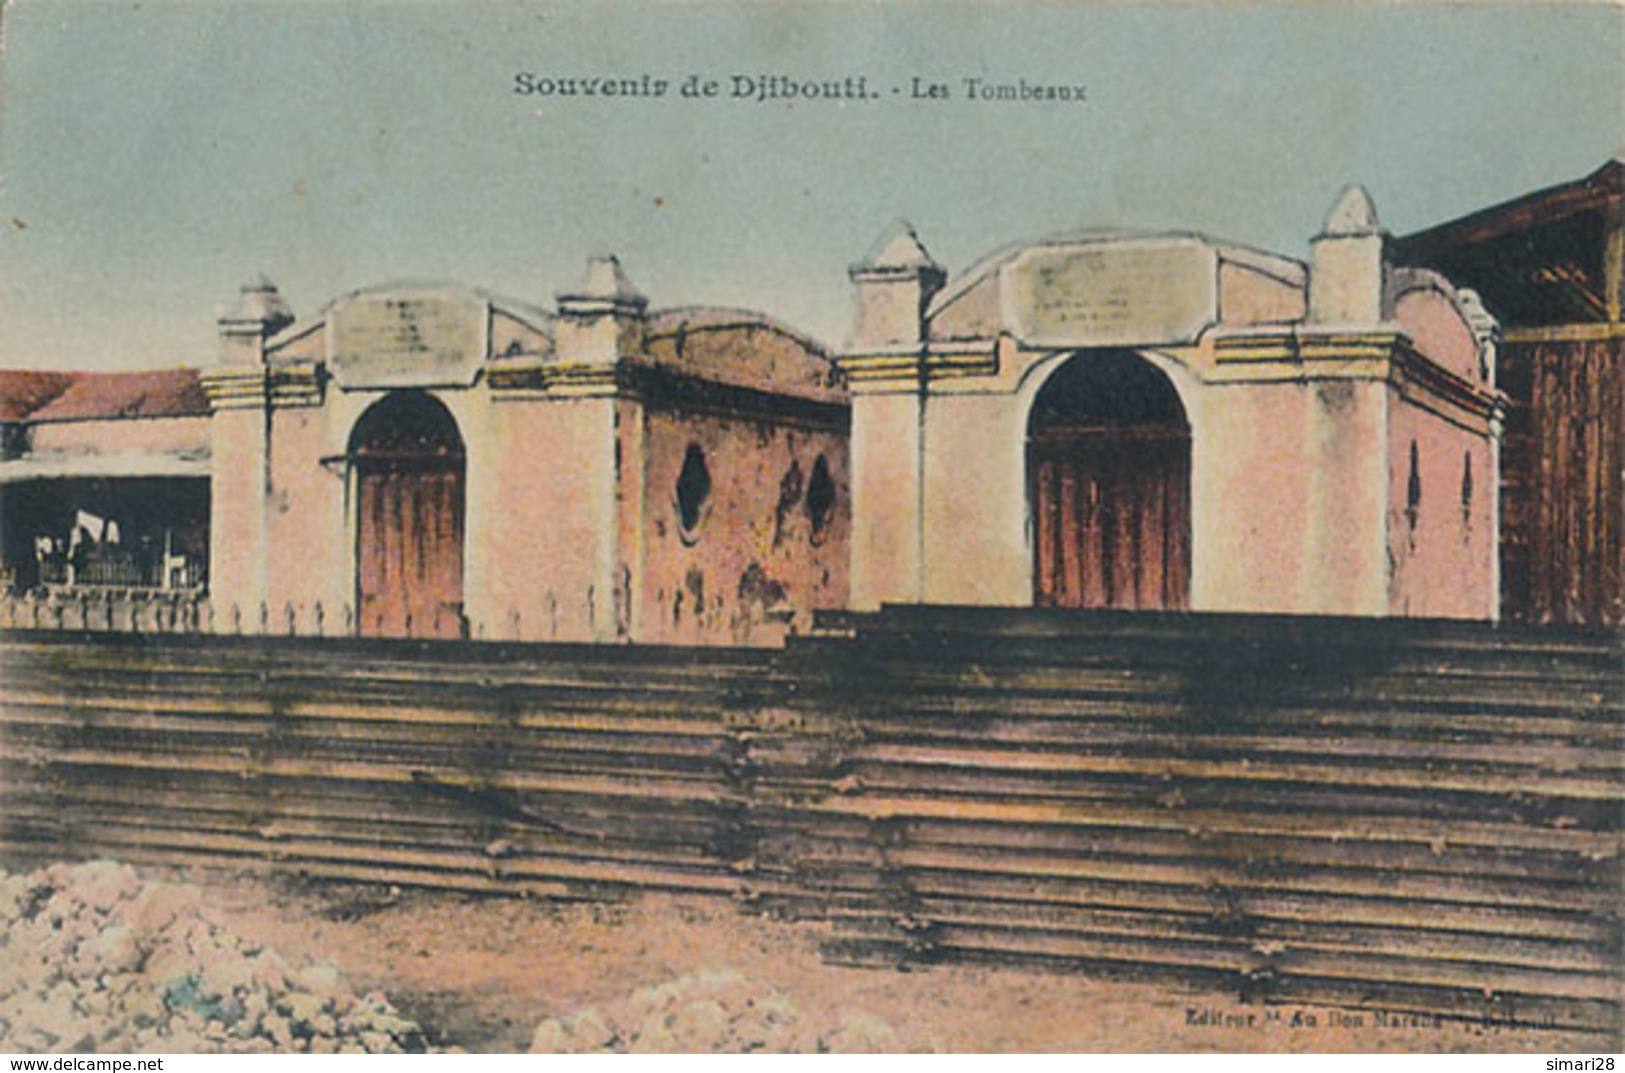 DJIBOUTI - SOUVENIR DE DJIBOUTI - LES TOMBEAUX - Djibouti